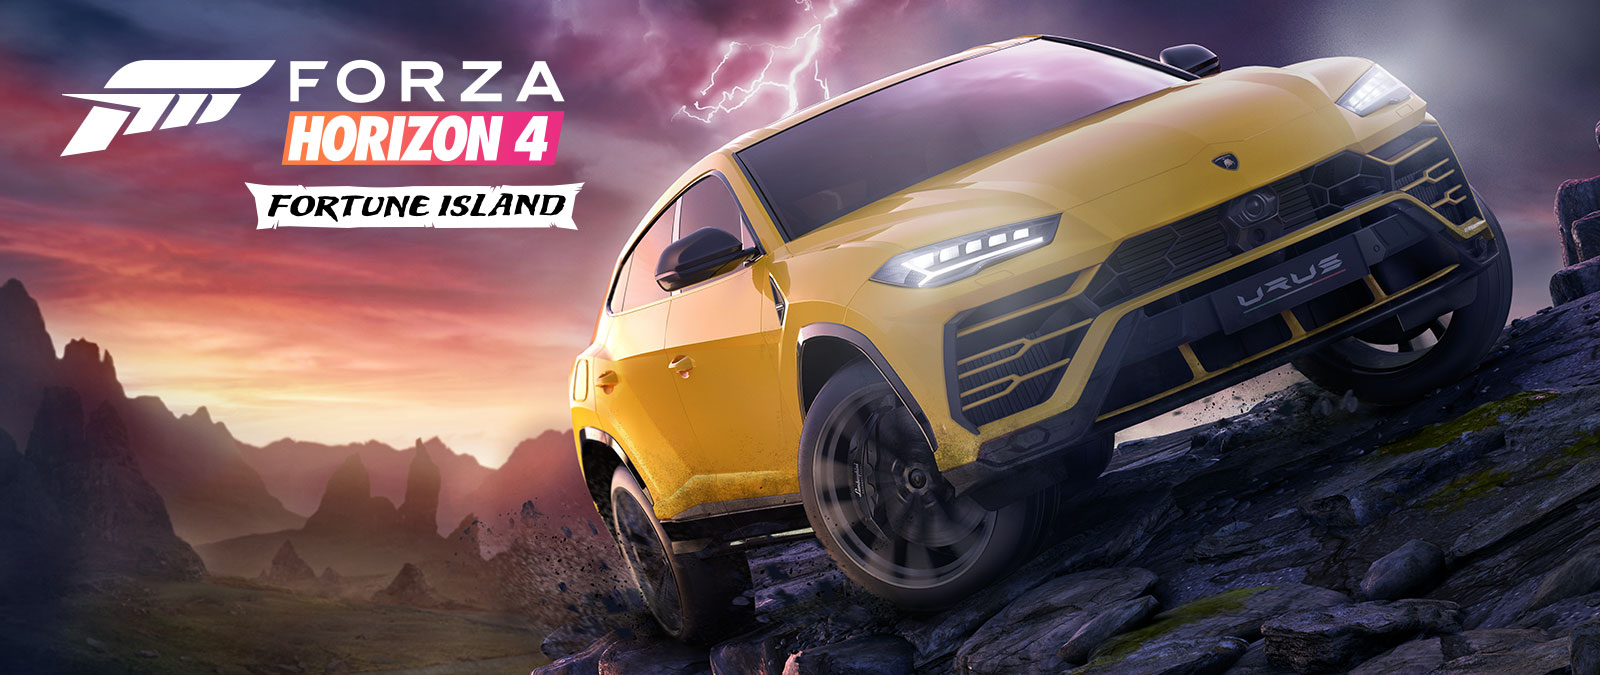 Forza Horizon 4 Fortune Island, une Lamborghini Urus jaune parcourant un terrain dangereux, avec des éclairs en arrière-plan